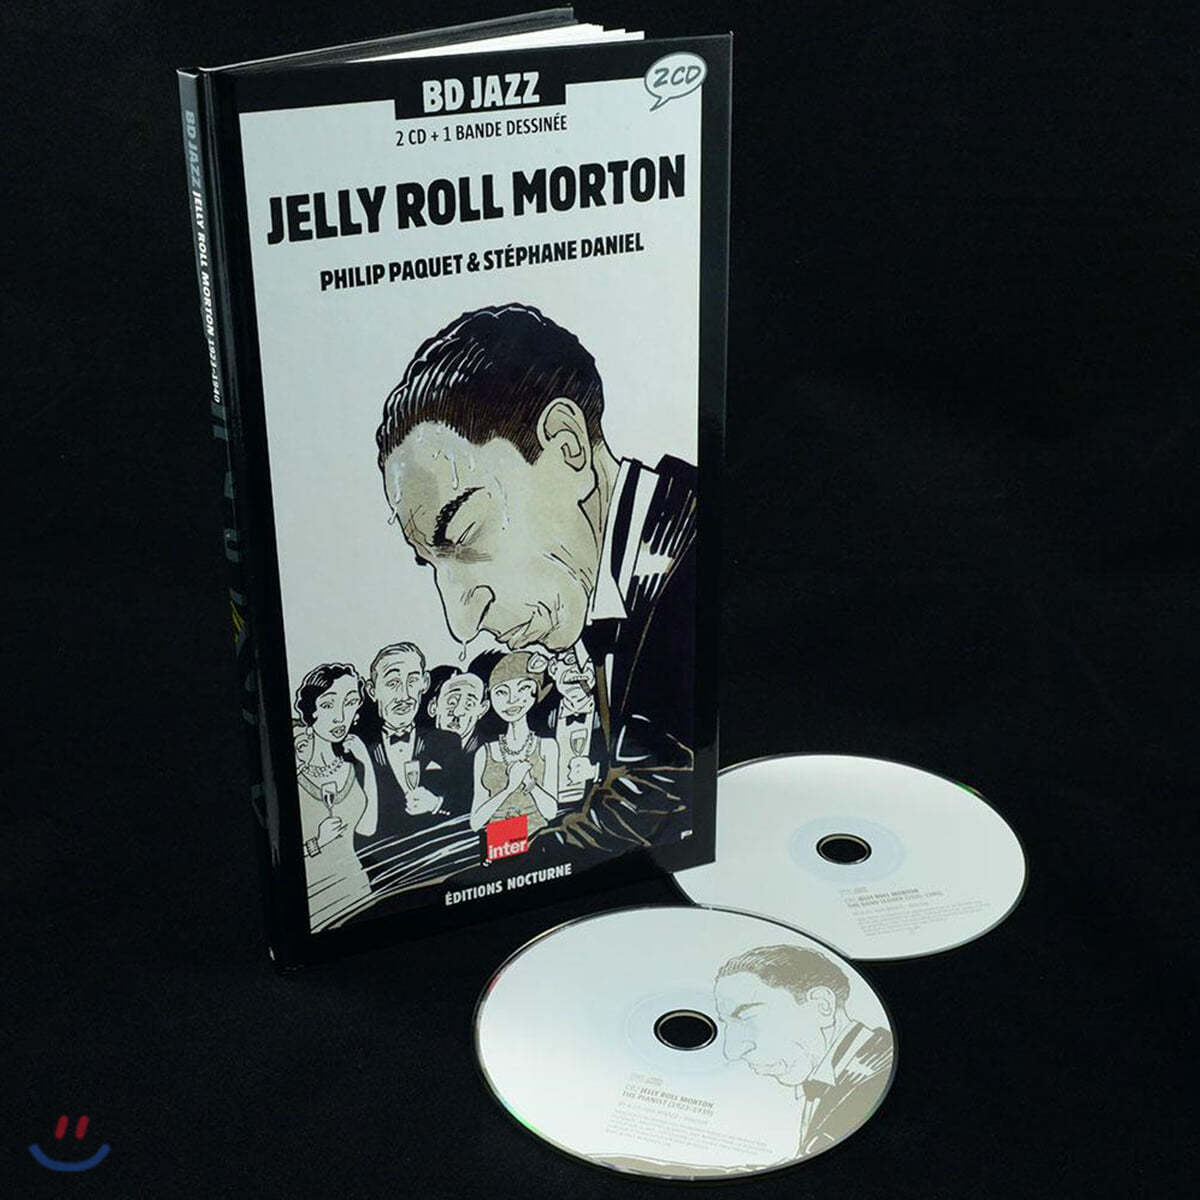 젤리 롤 모턴 연주 모음집 (Jelly Roll Morton - Illustrated by Philip Paquet / Stephane Daniel)